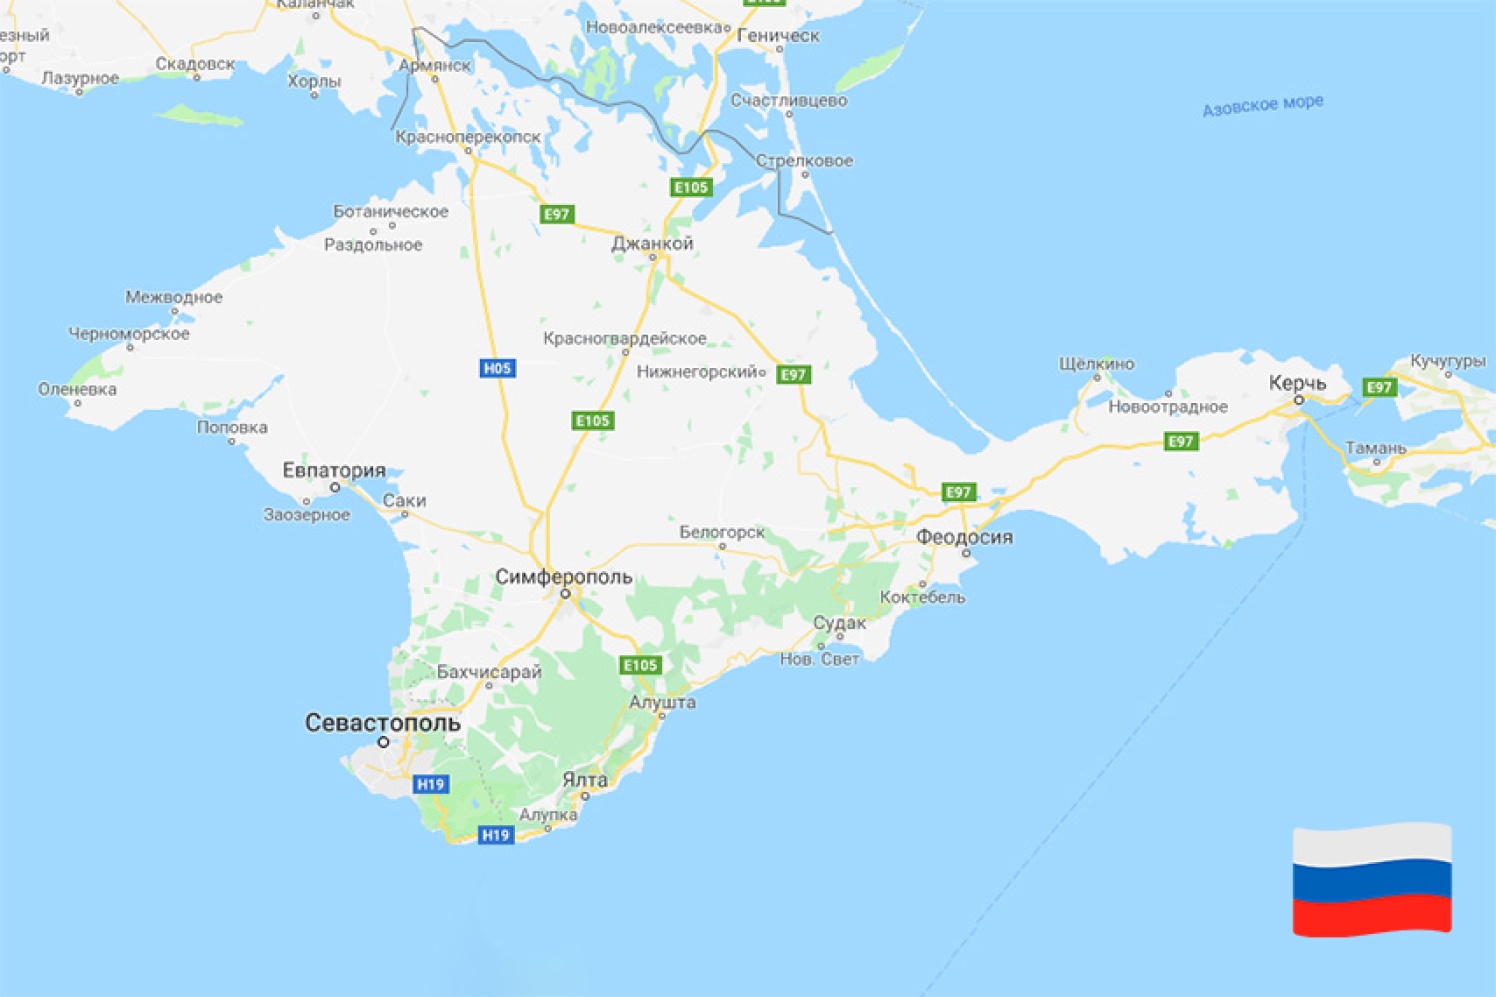 Херсонес на карте Крыма